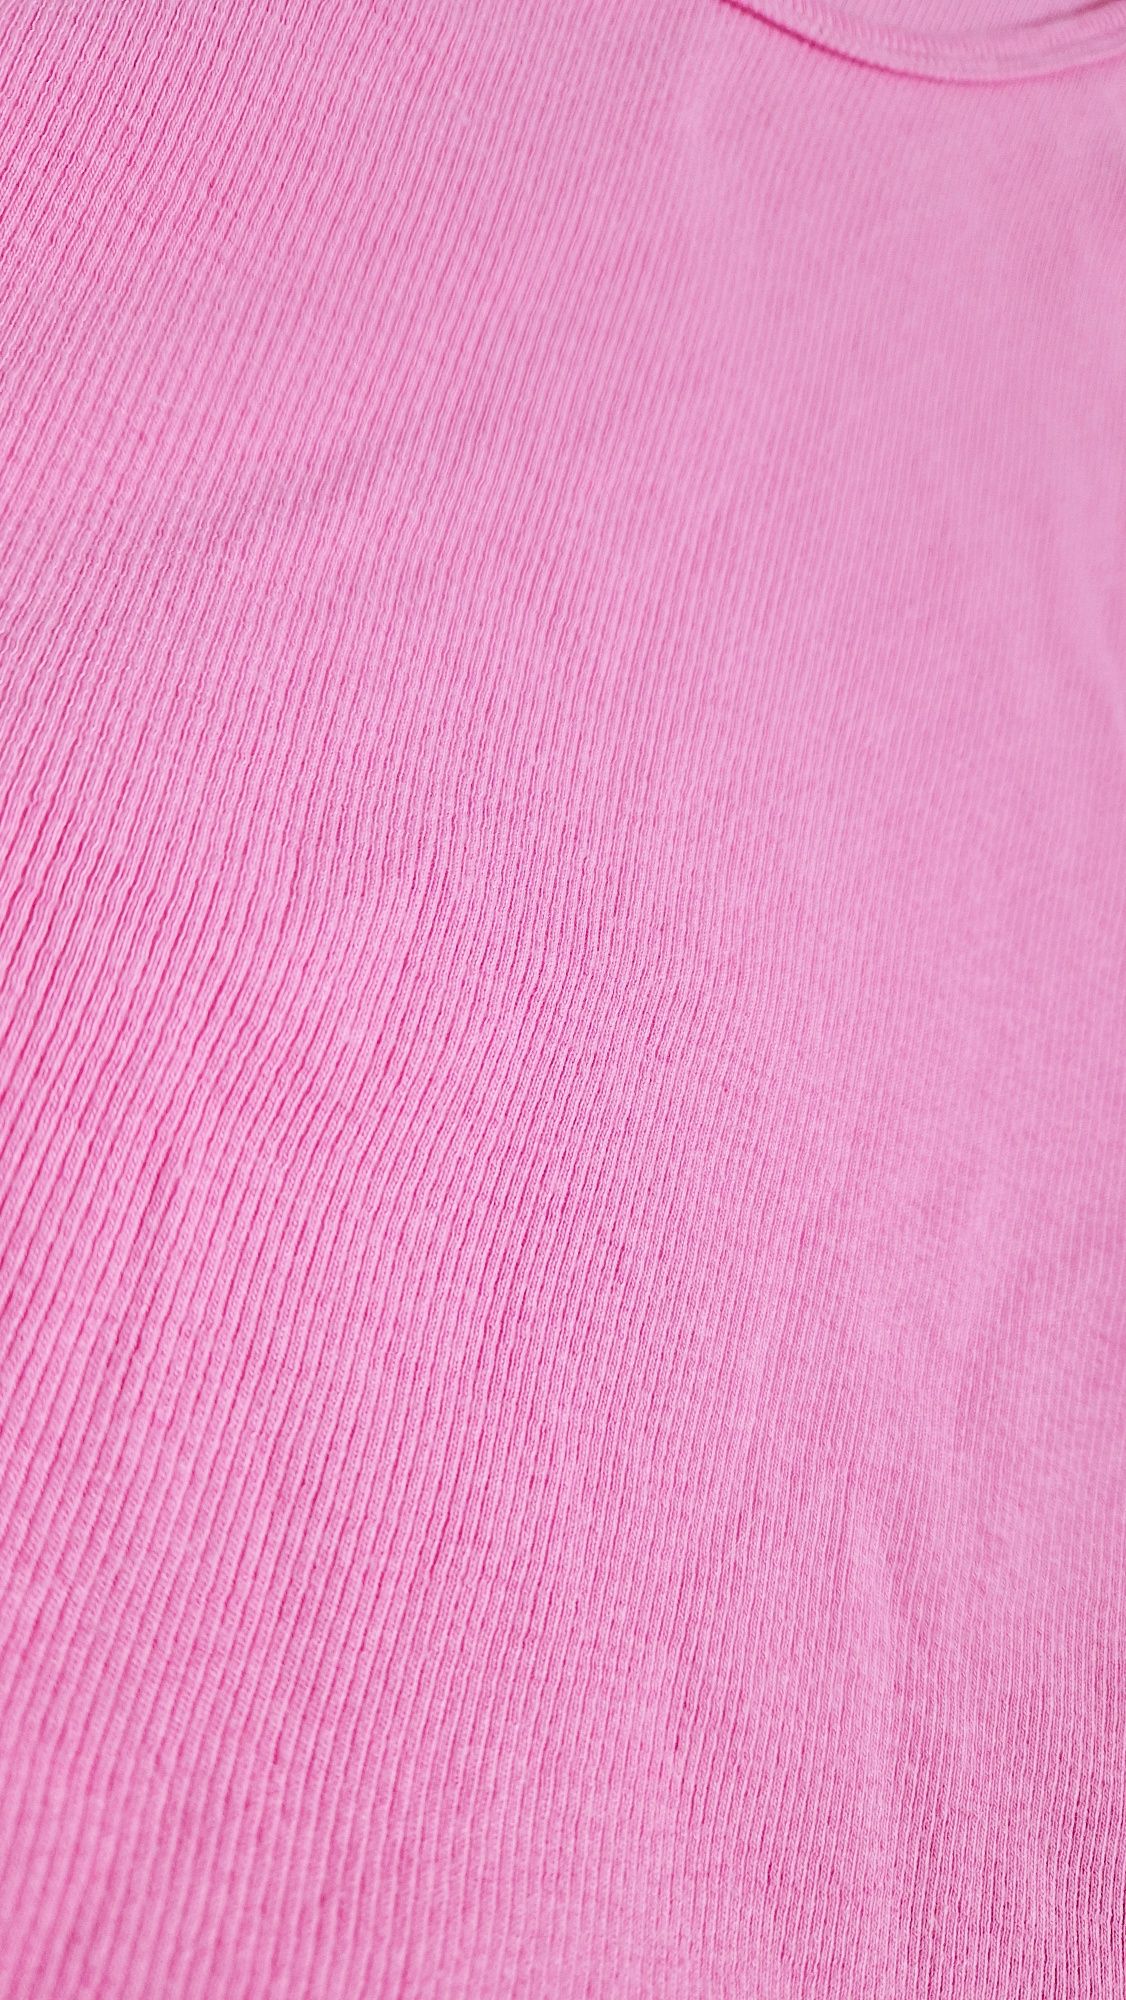 Rózowa bluzka na ramiaczkach podkoszulek prązek plus size letnia